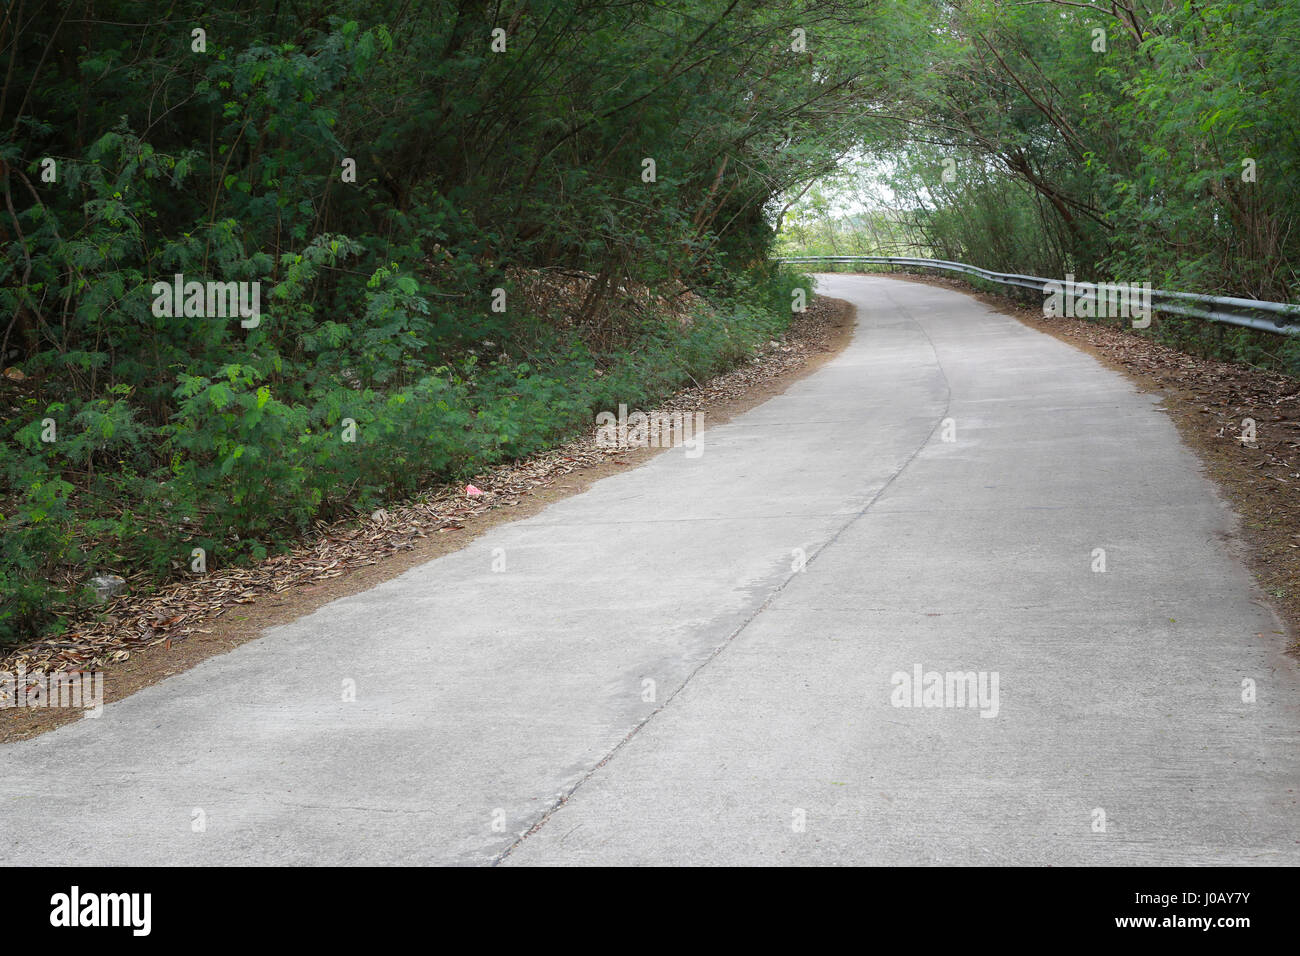 Vecchia strada nella foresta ricoperta di verde di alberi tropicali. Foto Stock